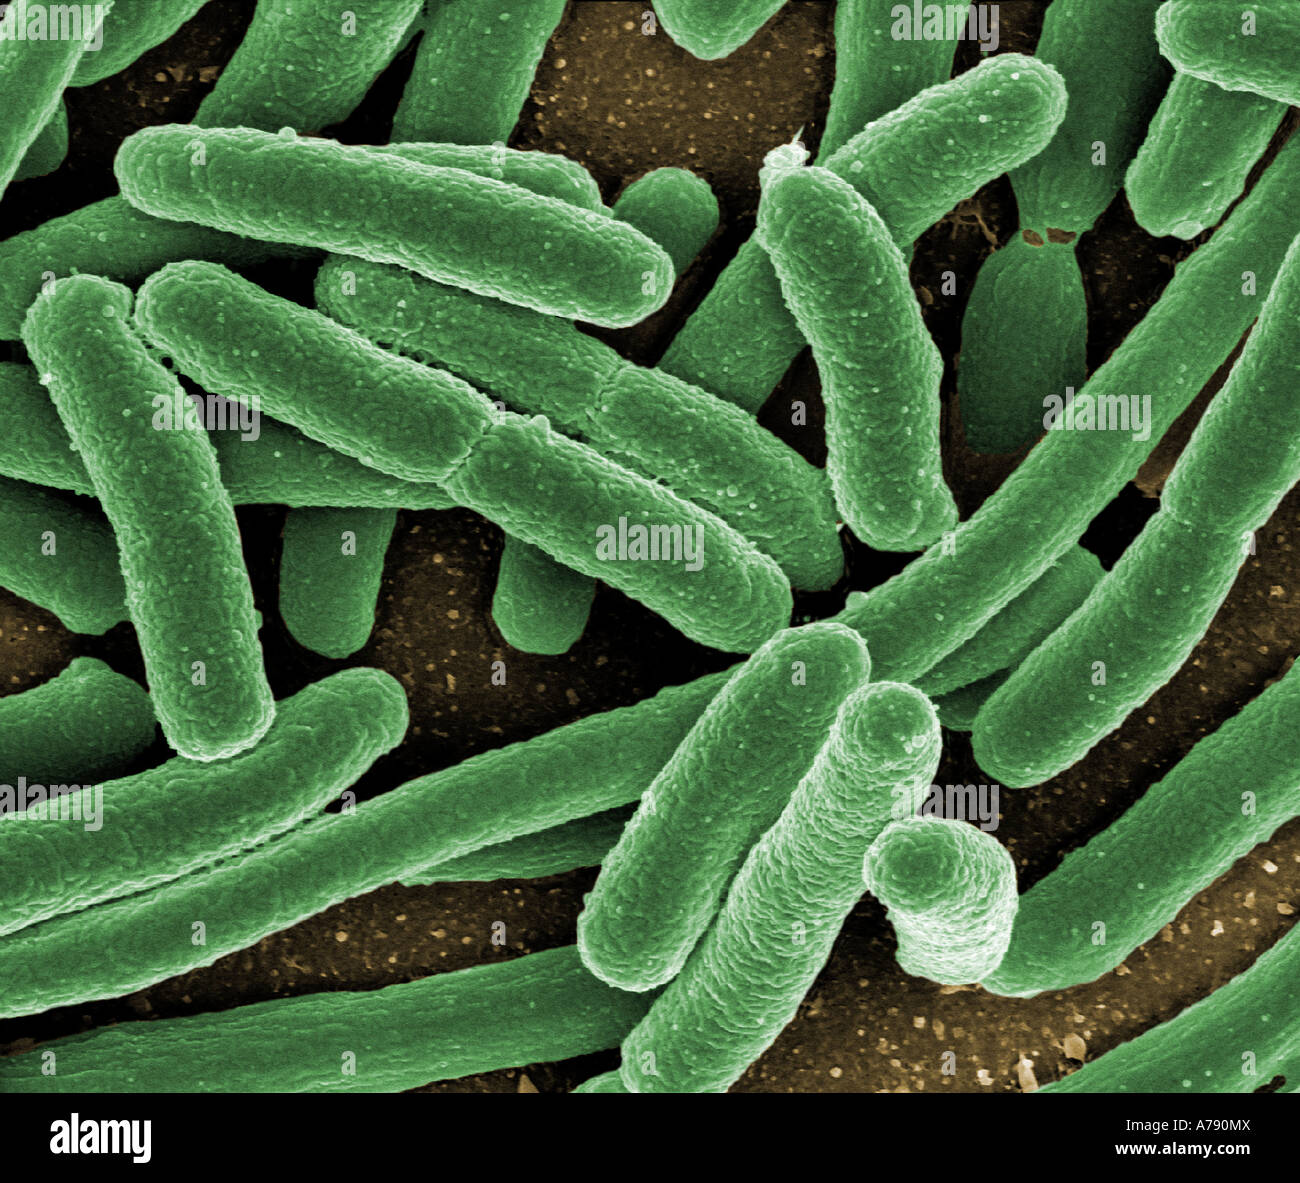 Micrografia elettronica a scansione di Escherichia coli cresciute in coltura e fatto aderire ad un vetrino Foto Stock